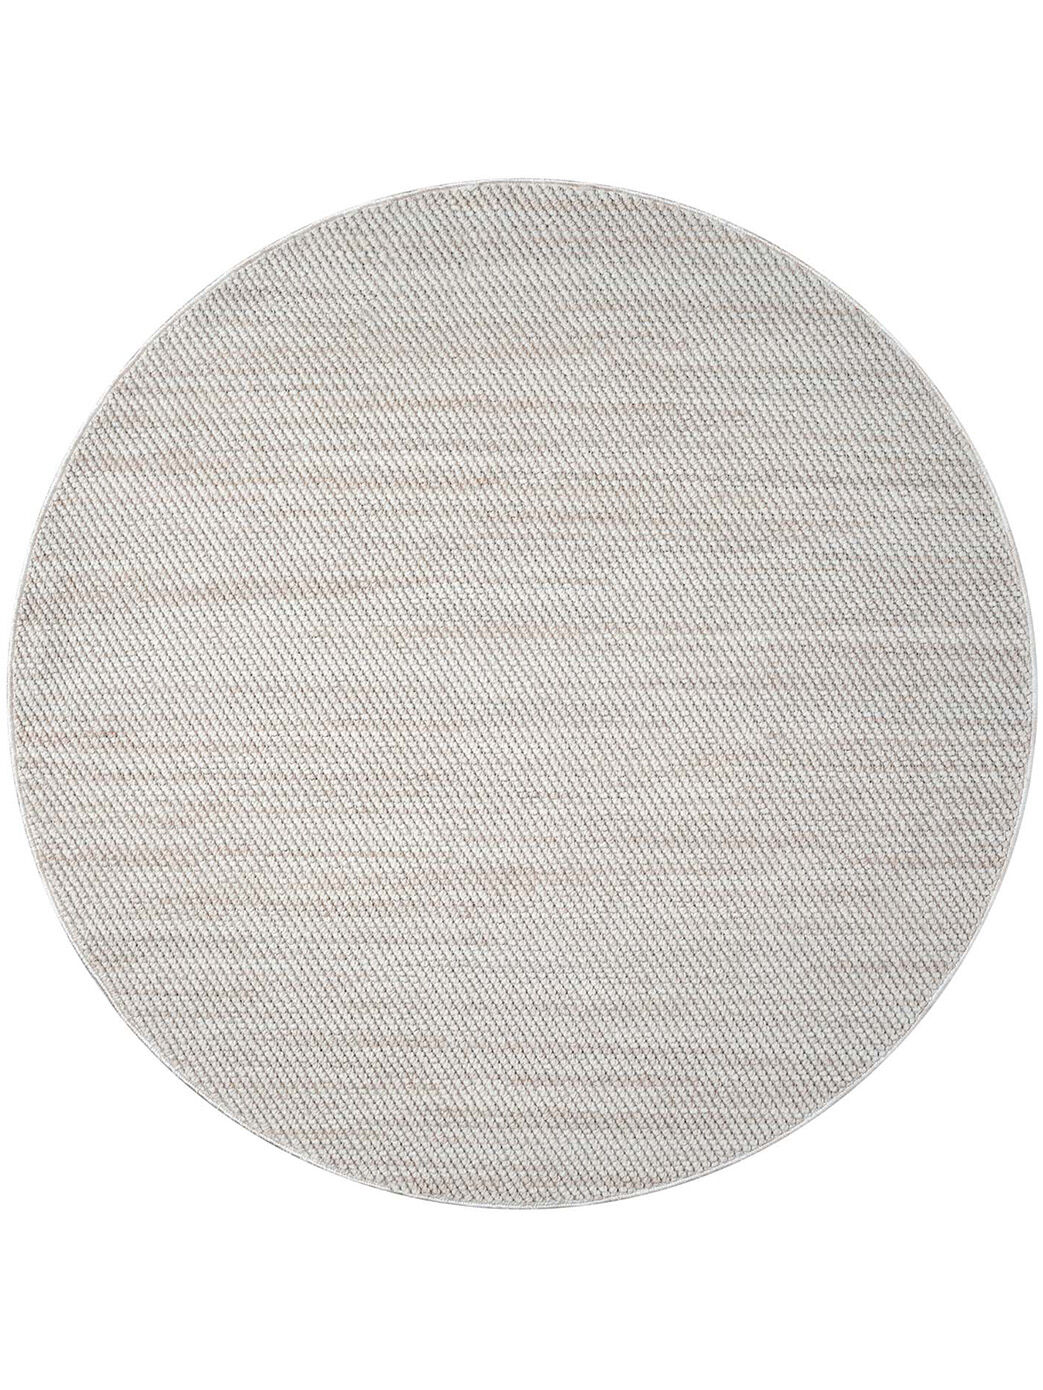 Teppich Wolle-Optik Geo 3488 Creme/Weiß Rund